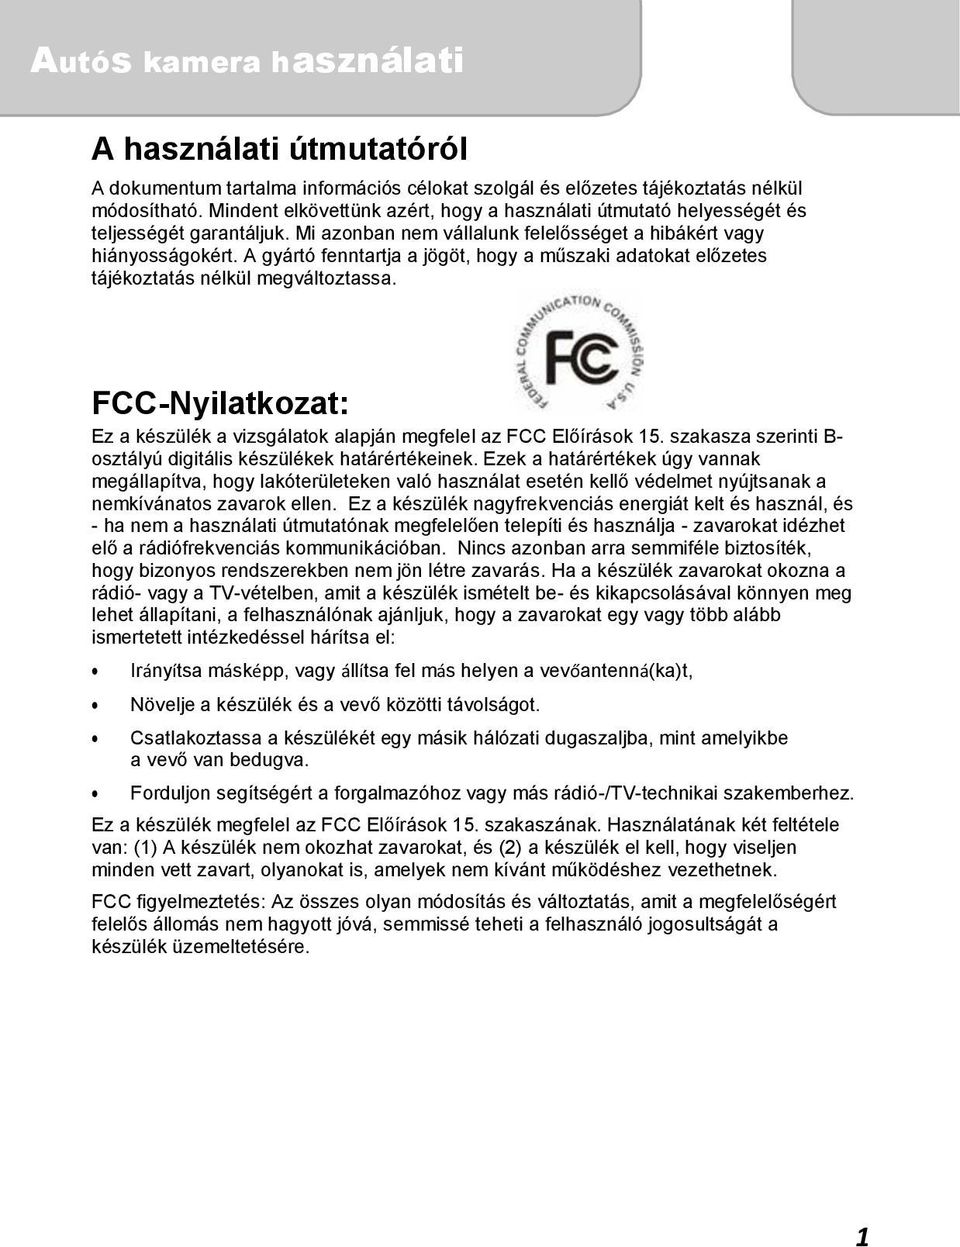 FCC-Nyilatkozat: Ez a készülék a vizsgálatok alapján megfelel az FCC Előírások 15. szakasza szerinti B- osztályú digitális készülékek határértékeinek.